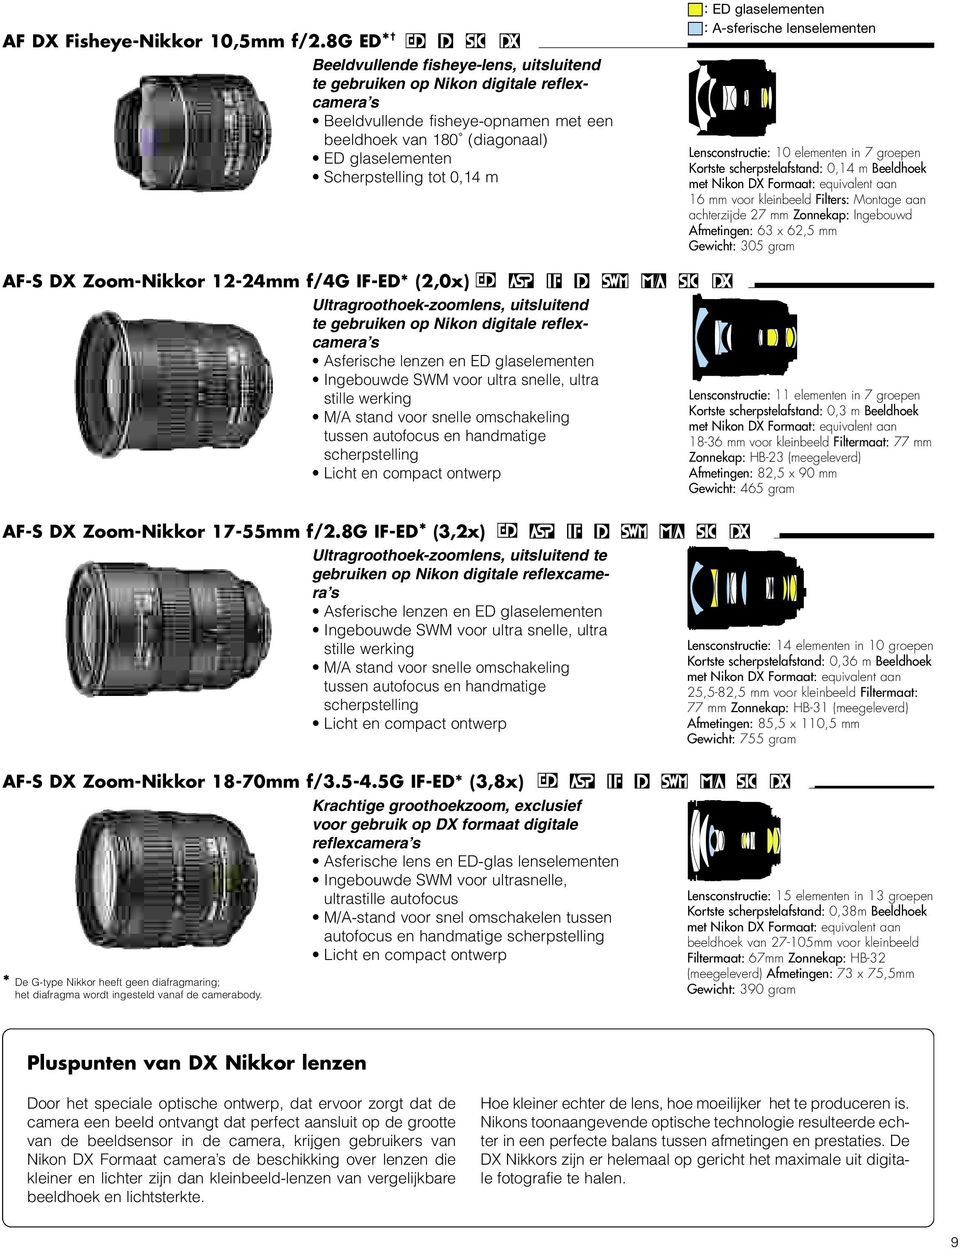 Scherpstelling tot 0,14 m : ED glaselementen : A-sferische lenselementen Lensconstructie: 10 elementen in 7 groepen Kortste scherpstelafstand: 0,14 m Beeldhoek 16 mm voor kleinbeeld Filters: Montage